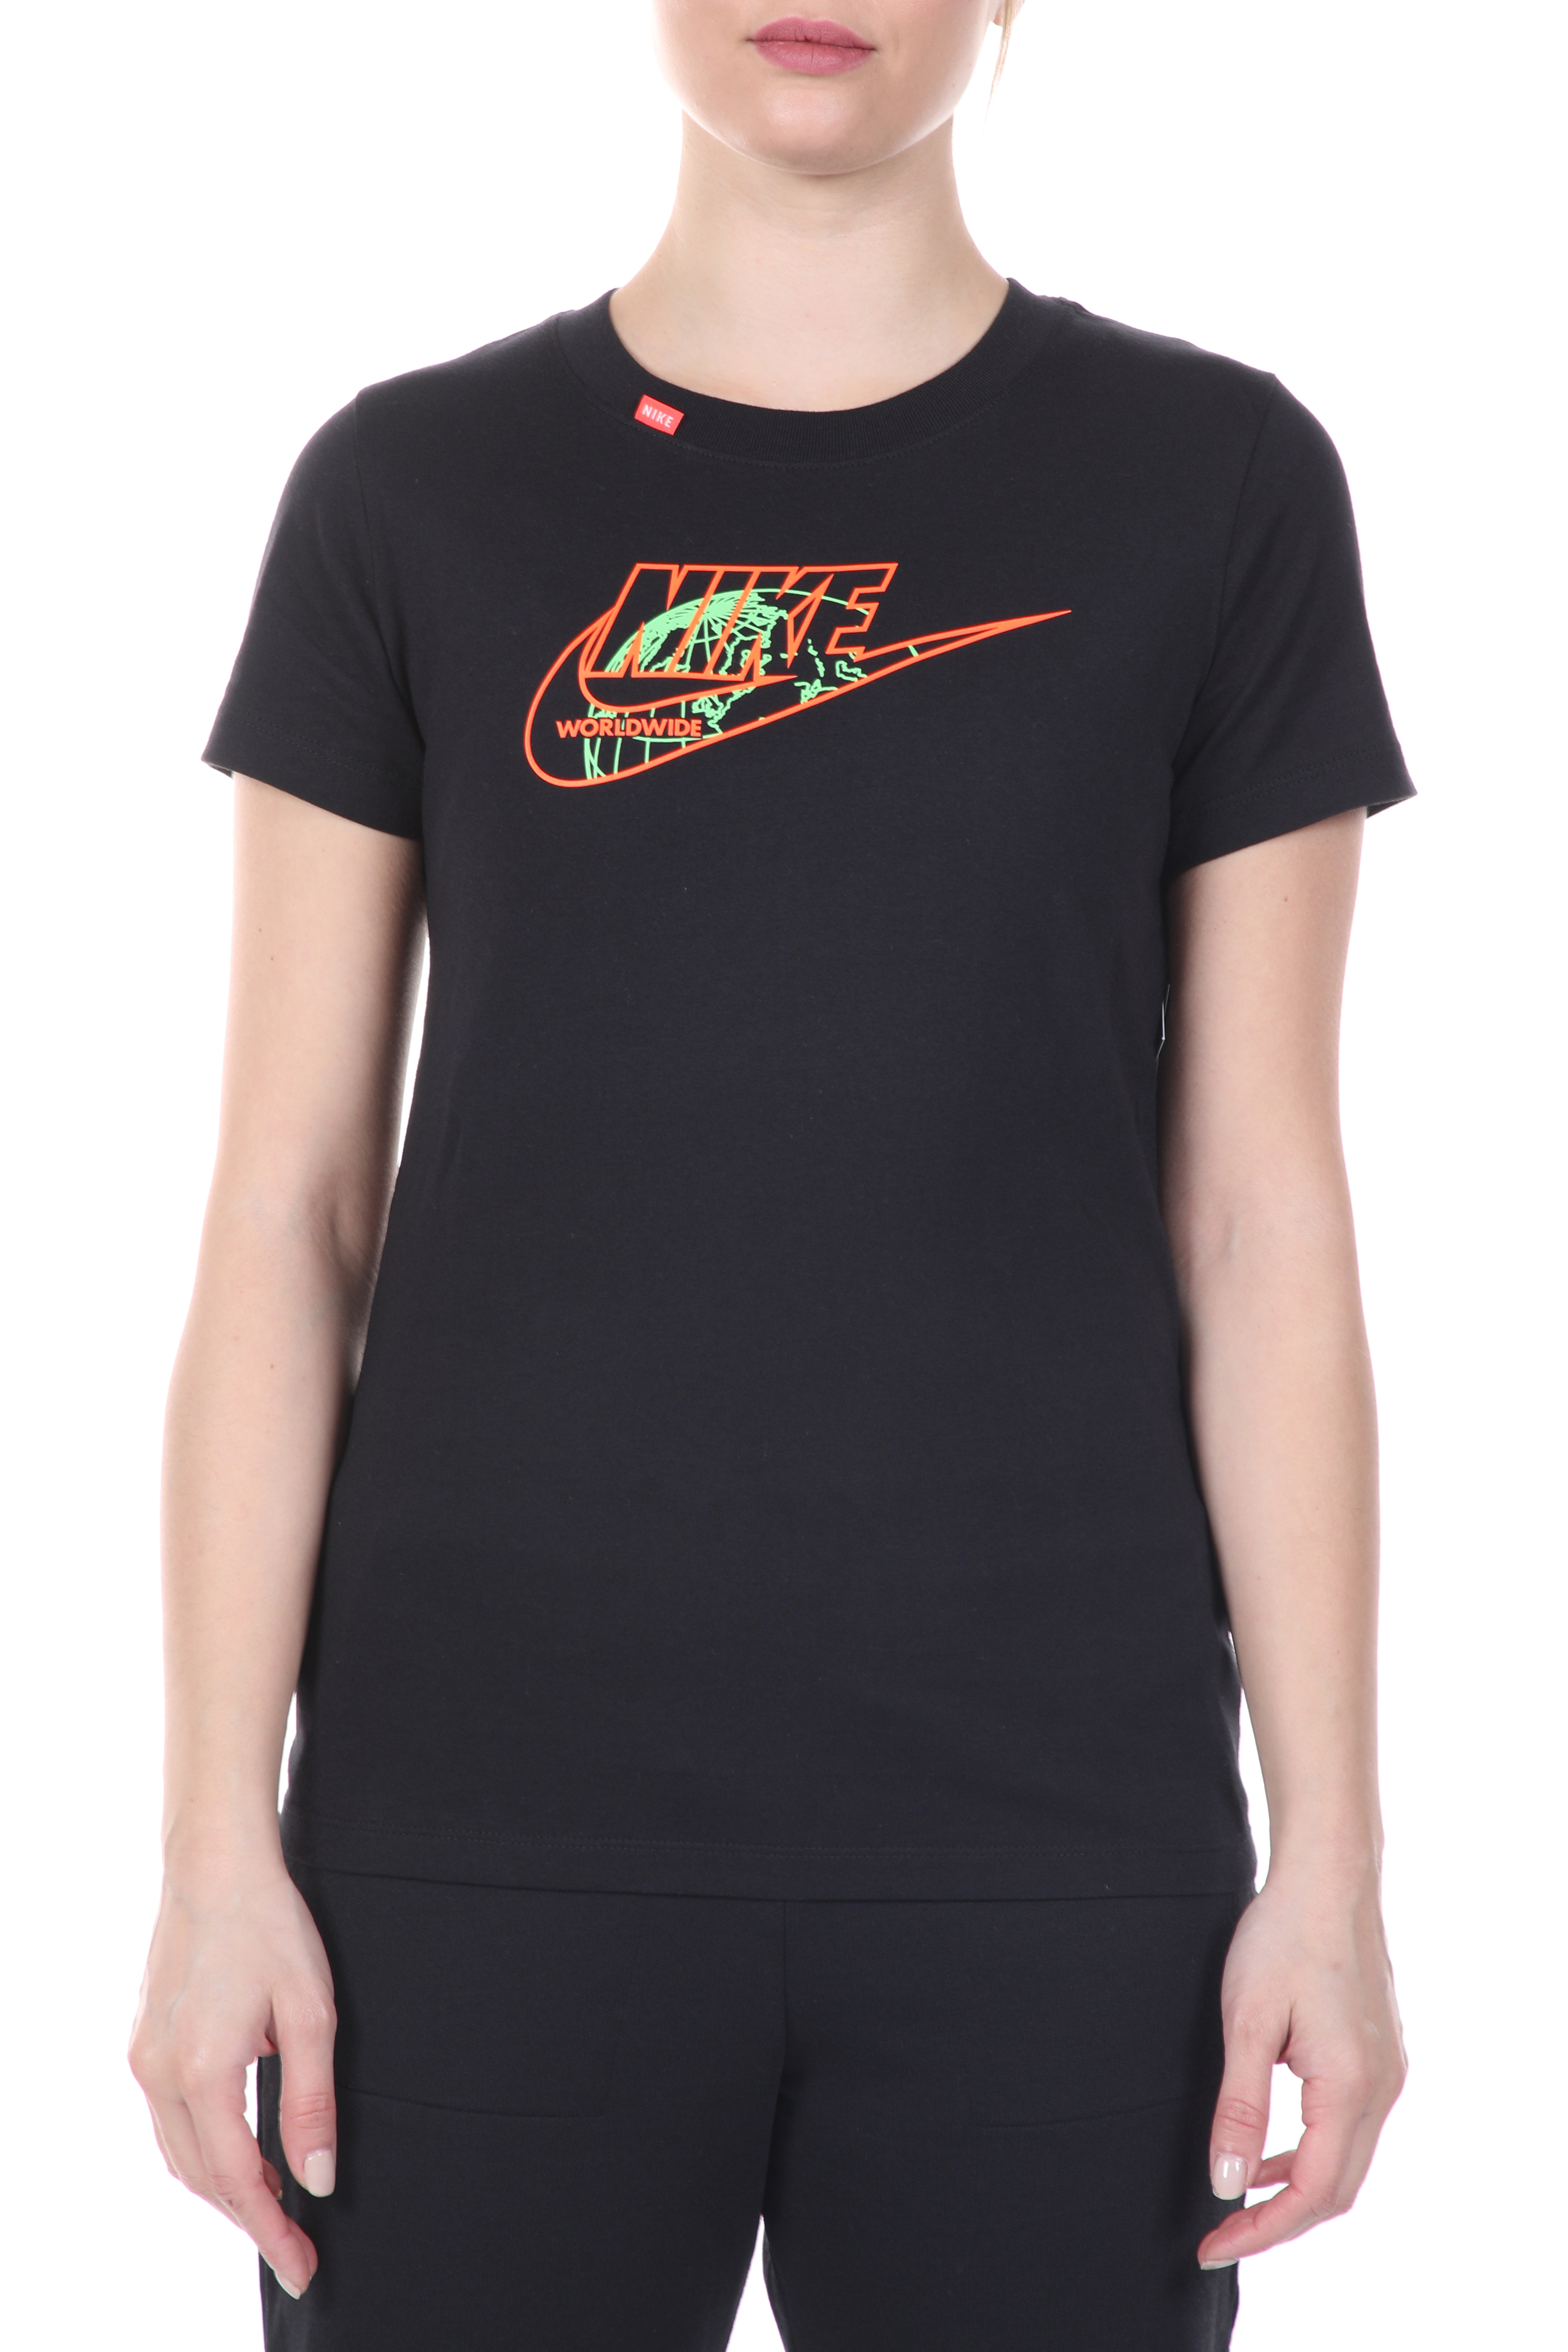 Γυναικεία/Ρούχα/Αθλητικά/T-shirt-Τοπ NIKE - Γυναικείο t-shirt NIKE NSW TEE WORLDWIDE 1 μαύρο